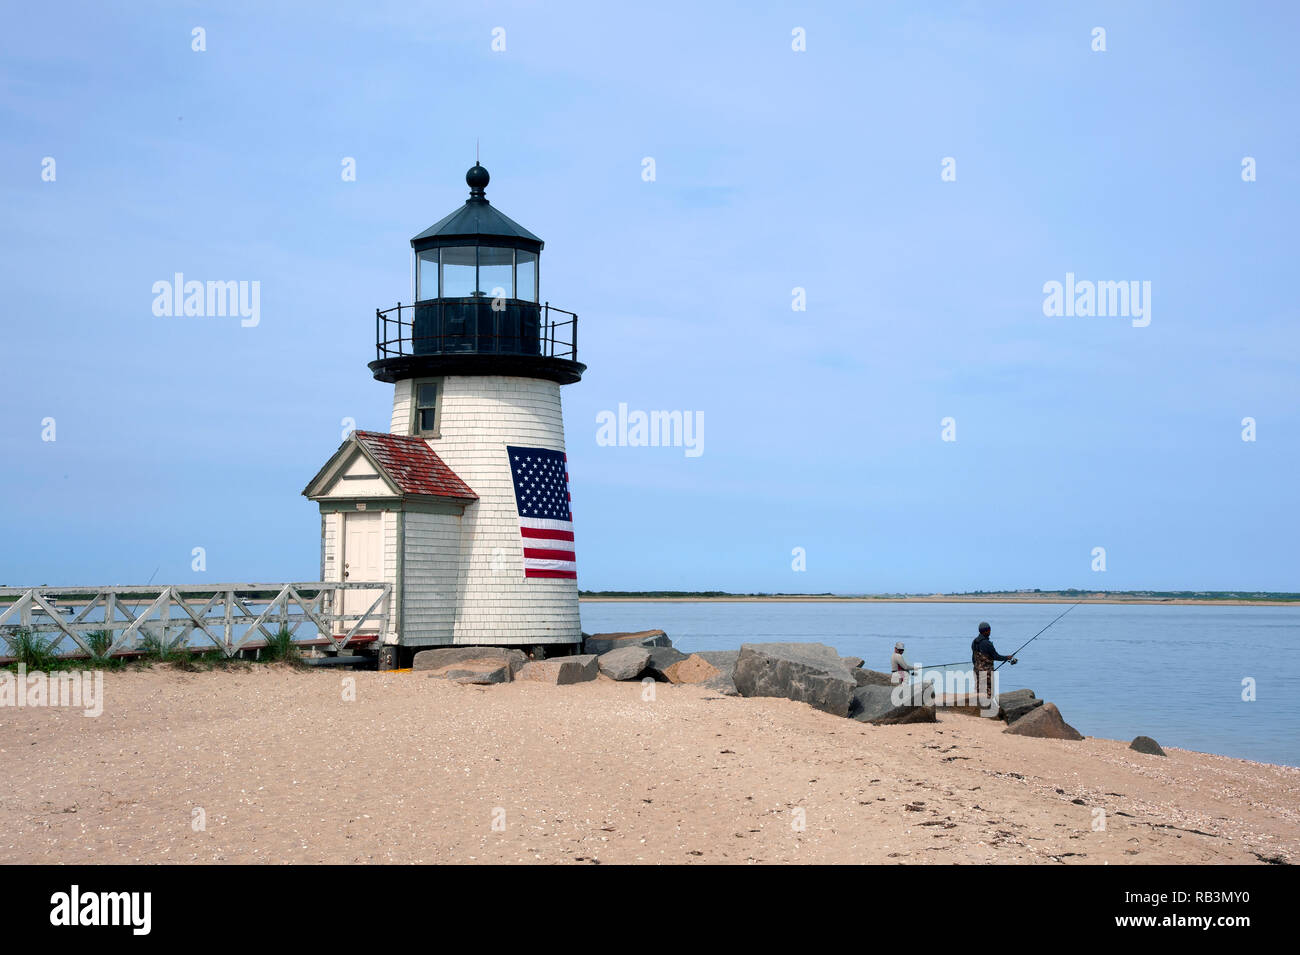 La pêche au large de la plage de sable par Brent Point Lighthouse sur l'île de Nantucket dans Masssachusetts. La balise est enveloppé dans un drapeau américain. Banque D'Images